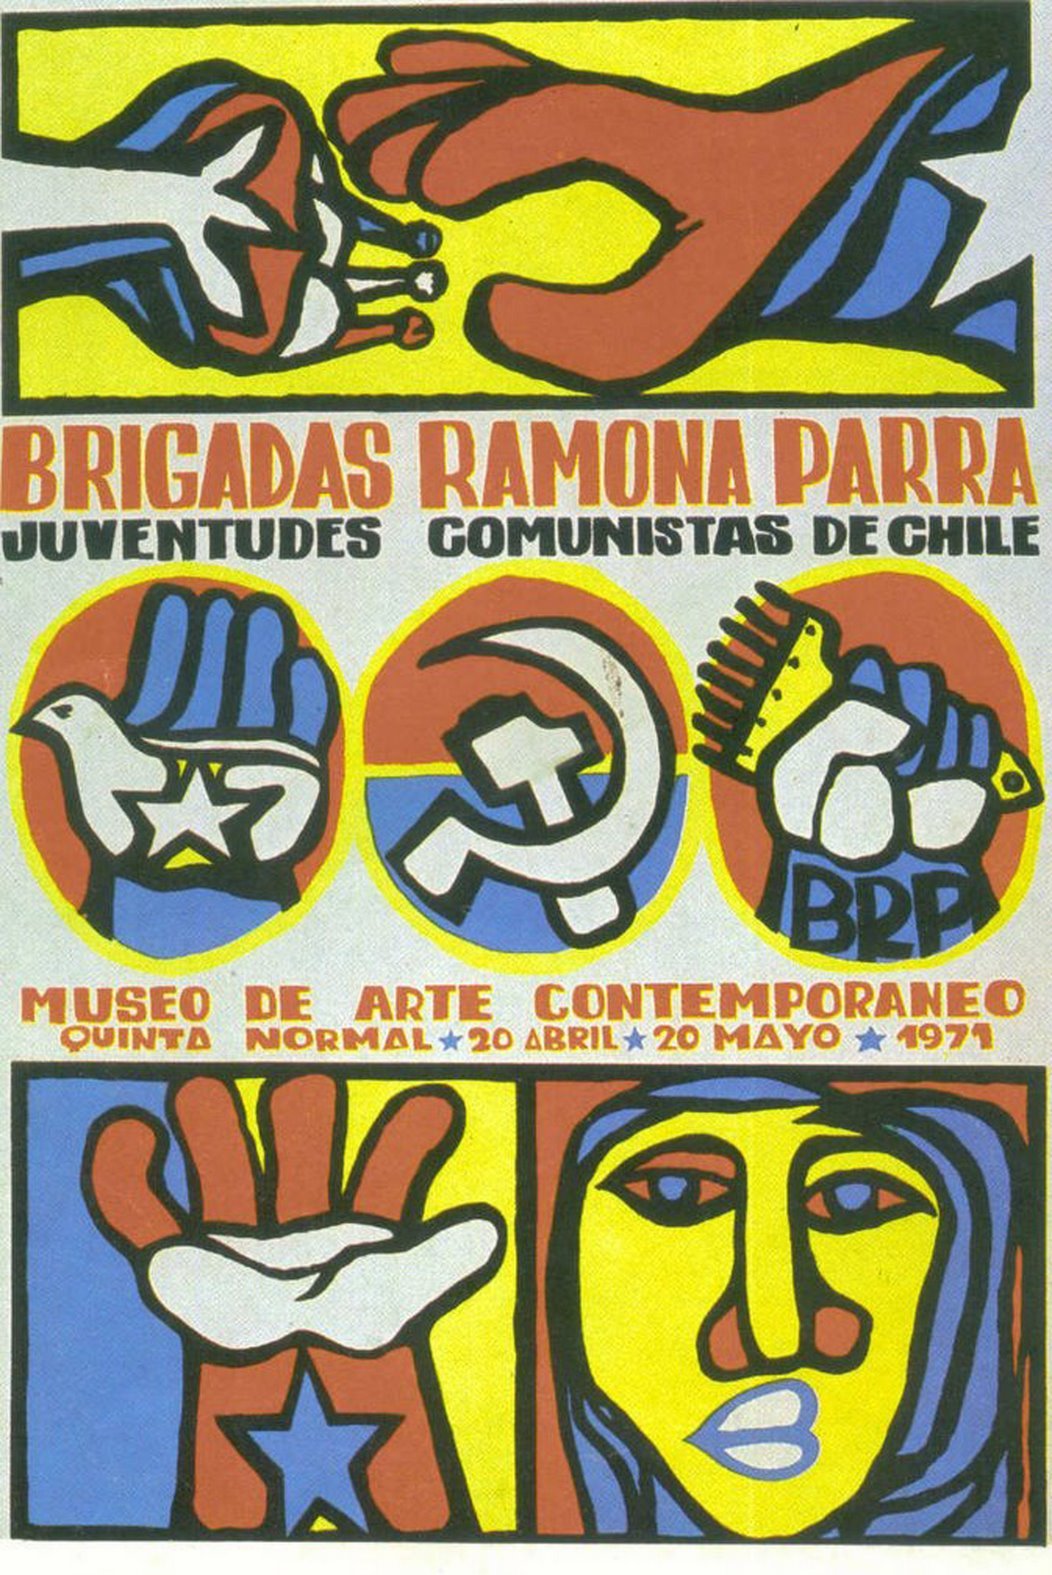  Figura 1 – Afiche que anuncia la exposición de murales de las BRP en el Museo de Arte Contemporáneo de Chile, 1971. En él se puede observar el estilo propio de los murales realizados por estas brigadas. Disponível em: http://www.simbolospatrios.cl/displayimage.php?album=search